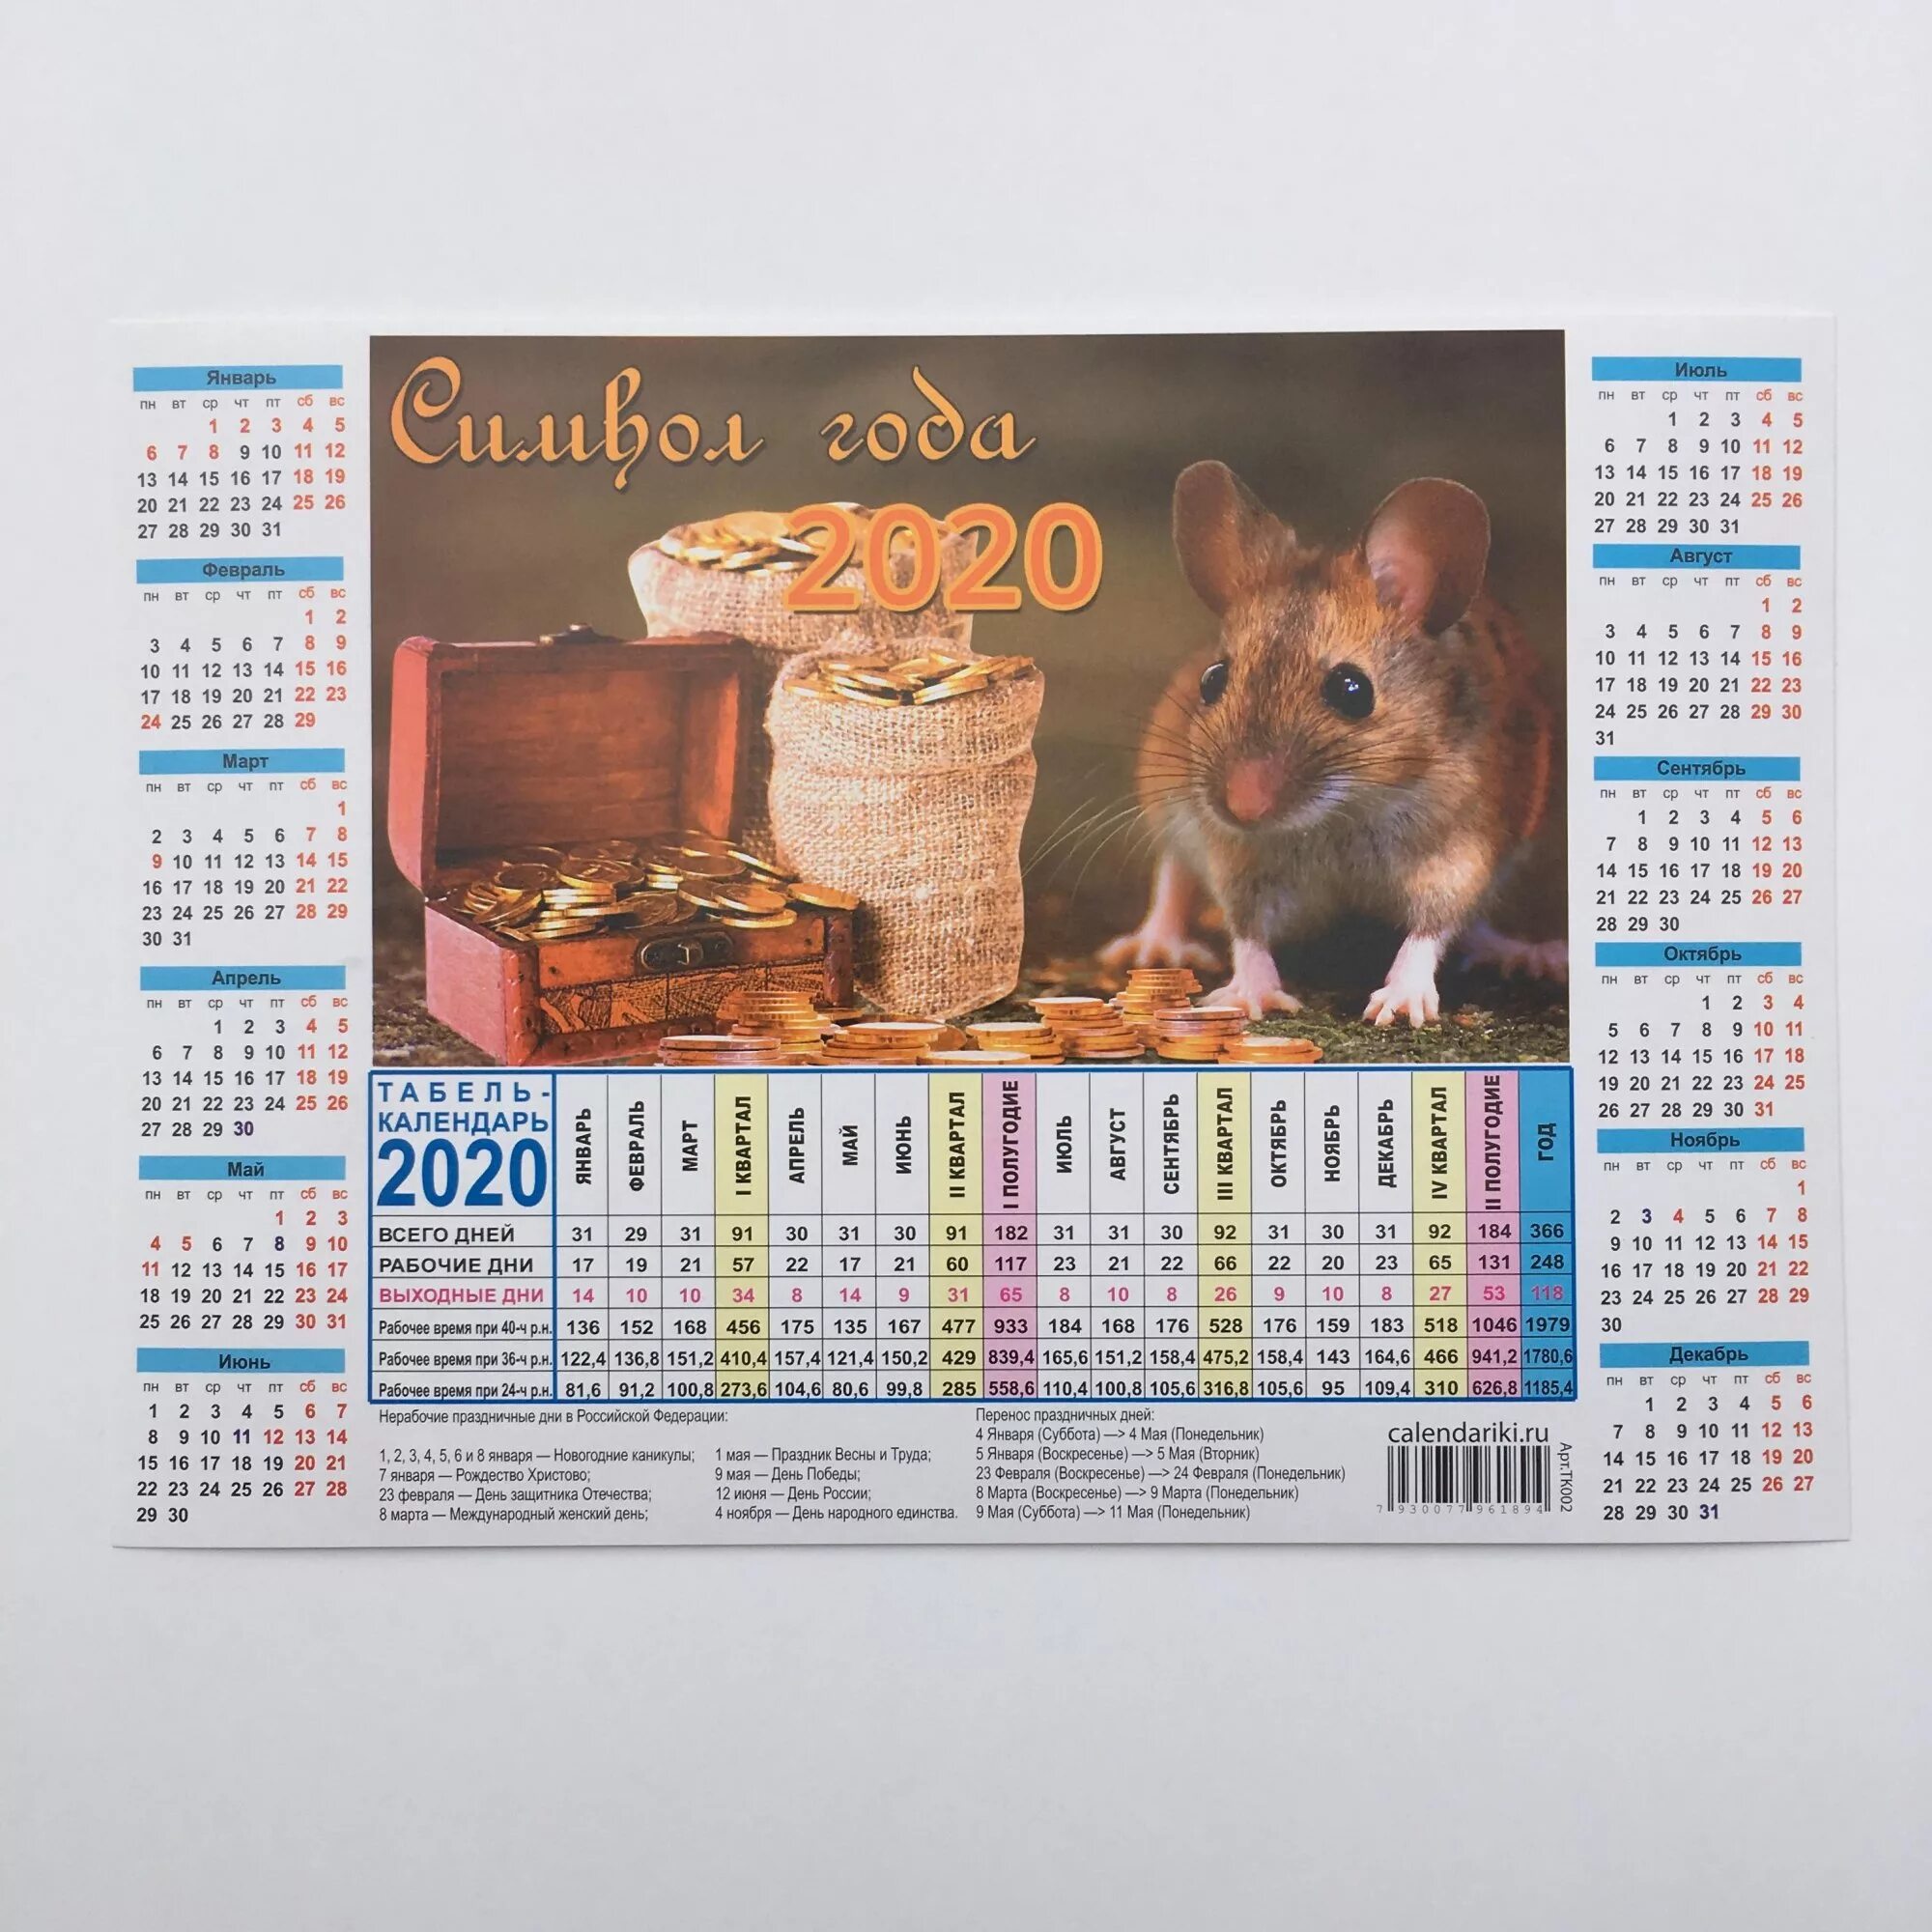 Табель календарь 2024 распечатать. Календарь на 2020 год. Производственный календарь 2020. Табель календарь 2020. Производственный календарь 2020 го.